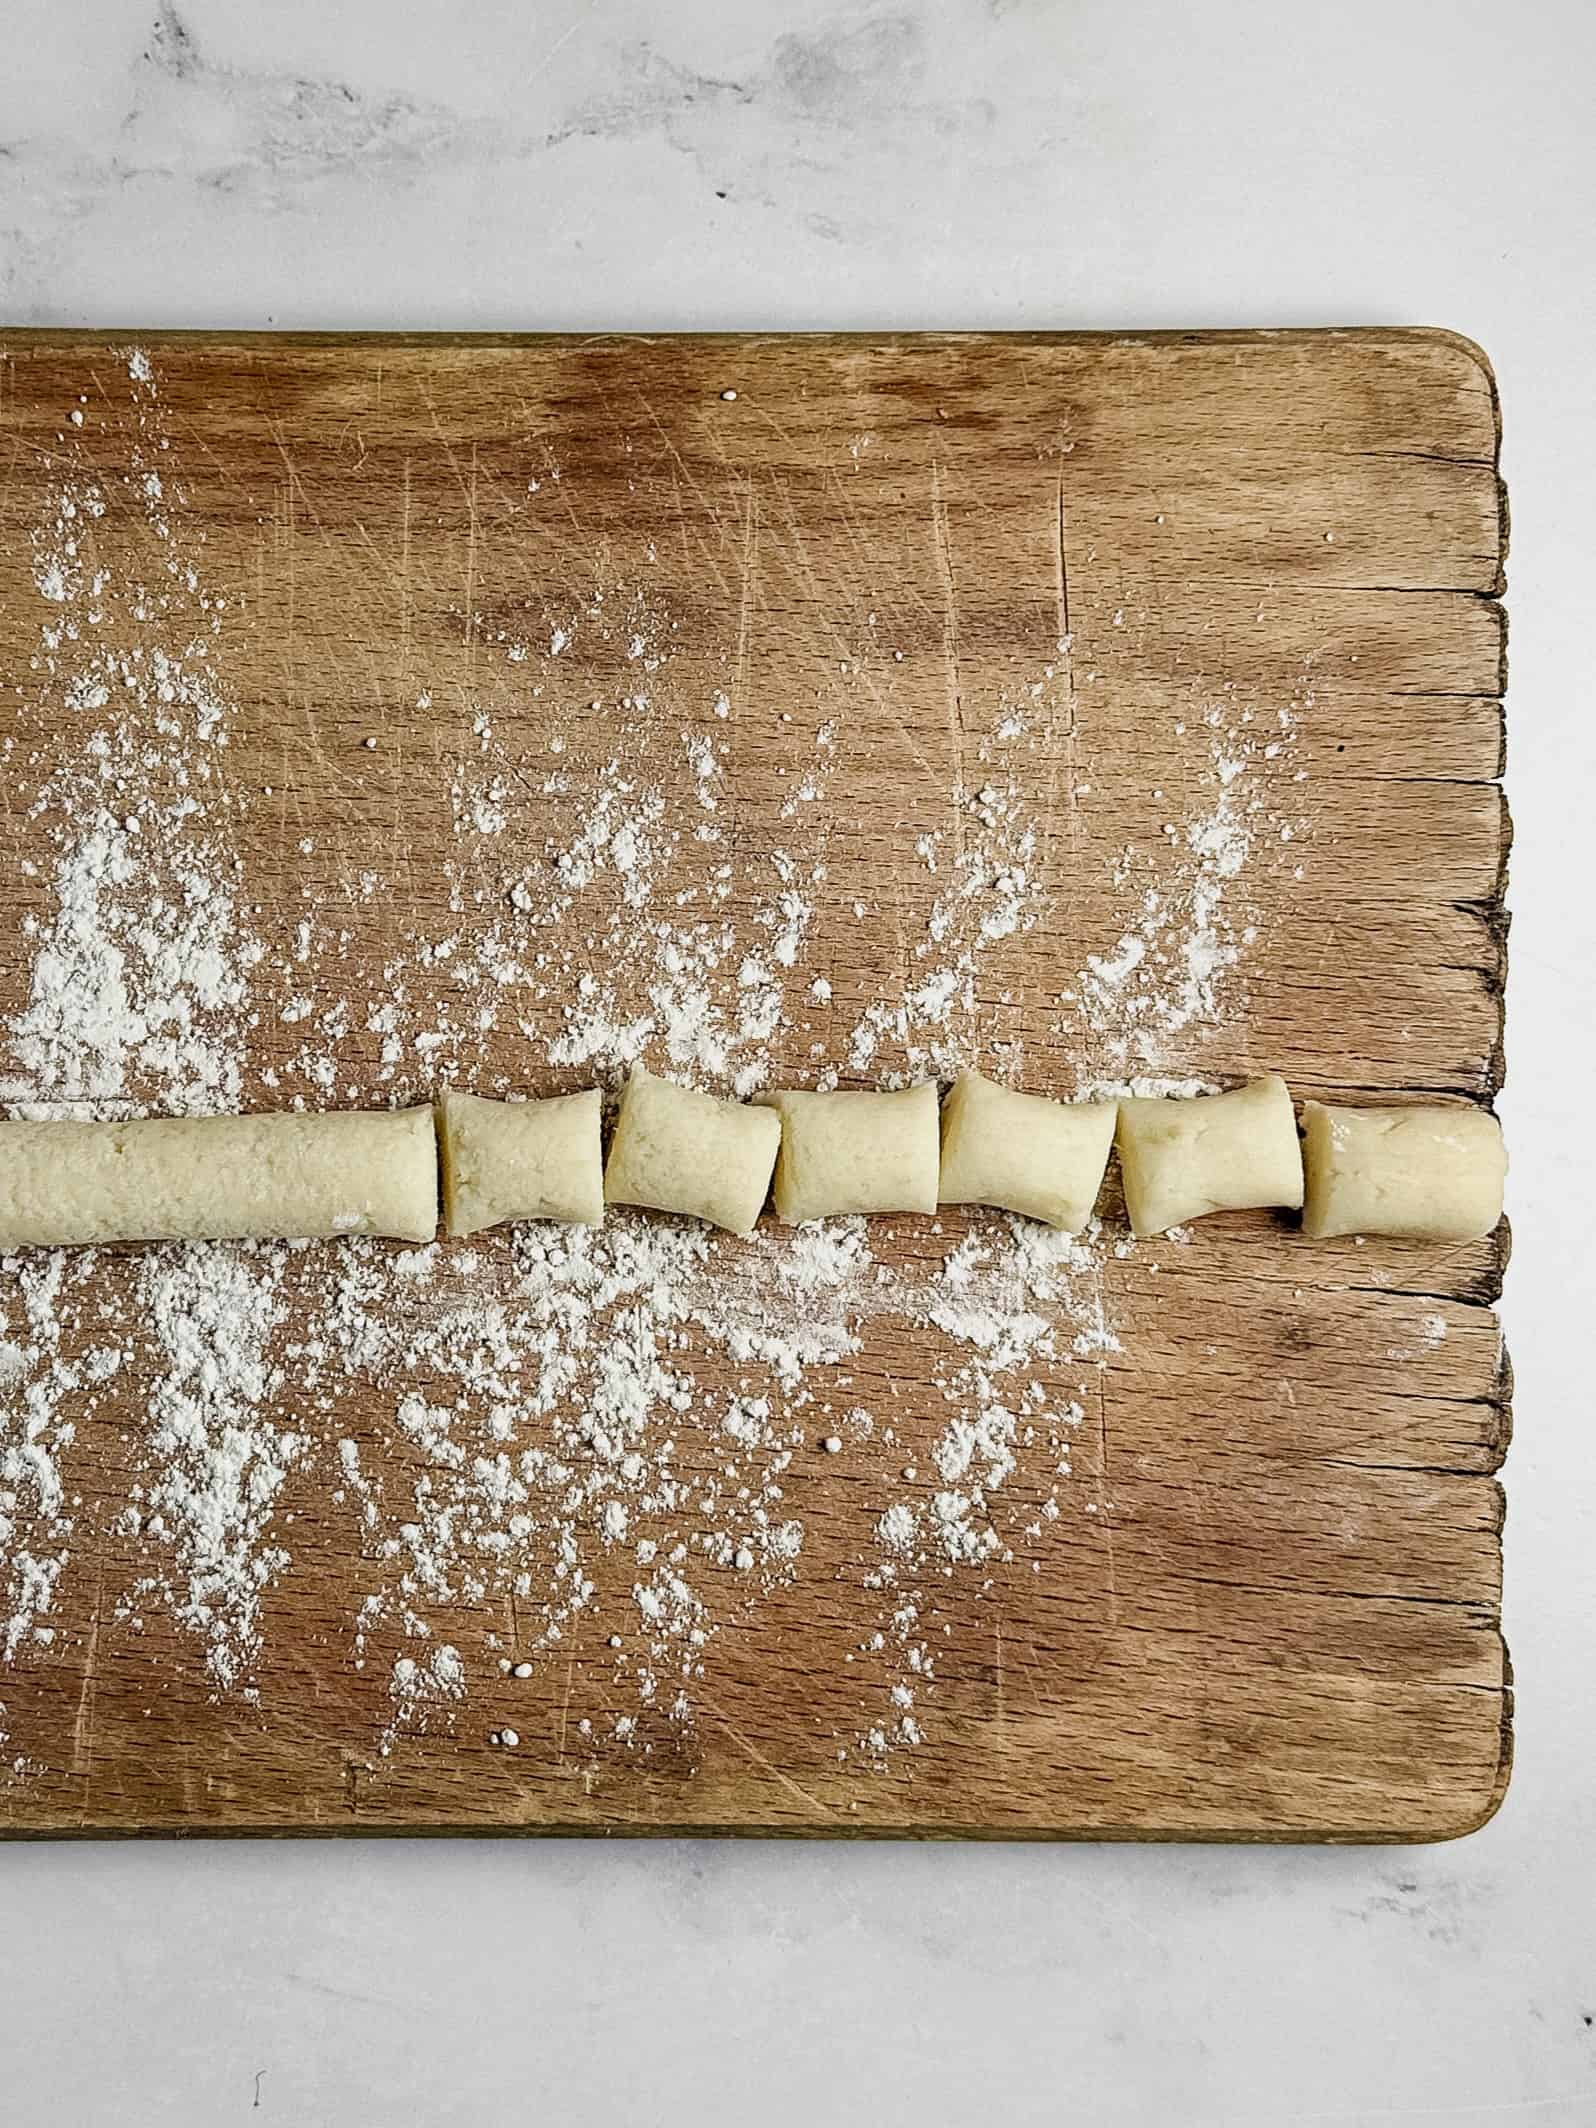 Gnocchi on wood board.